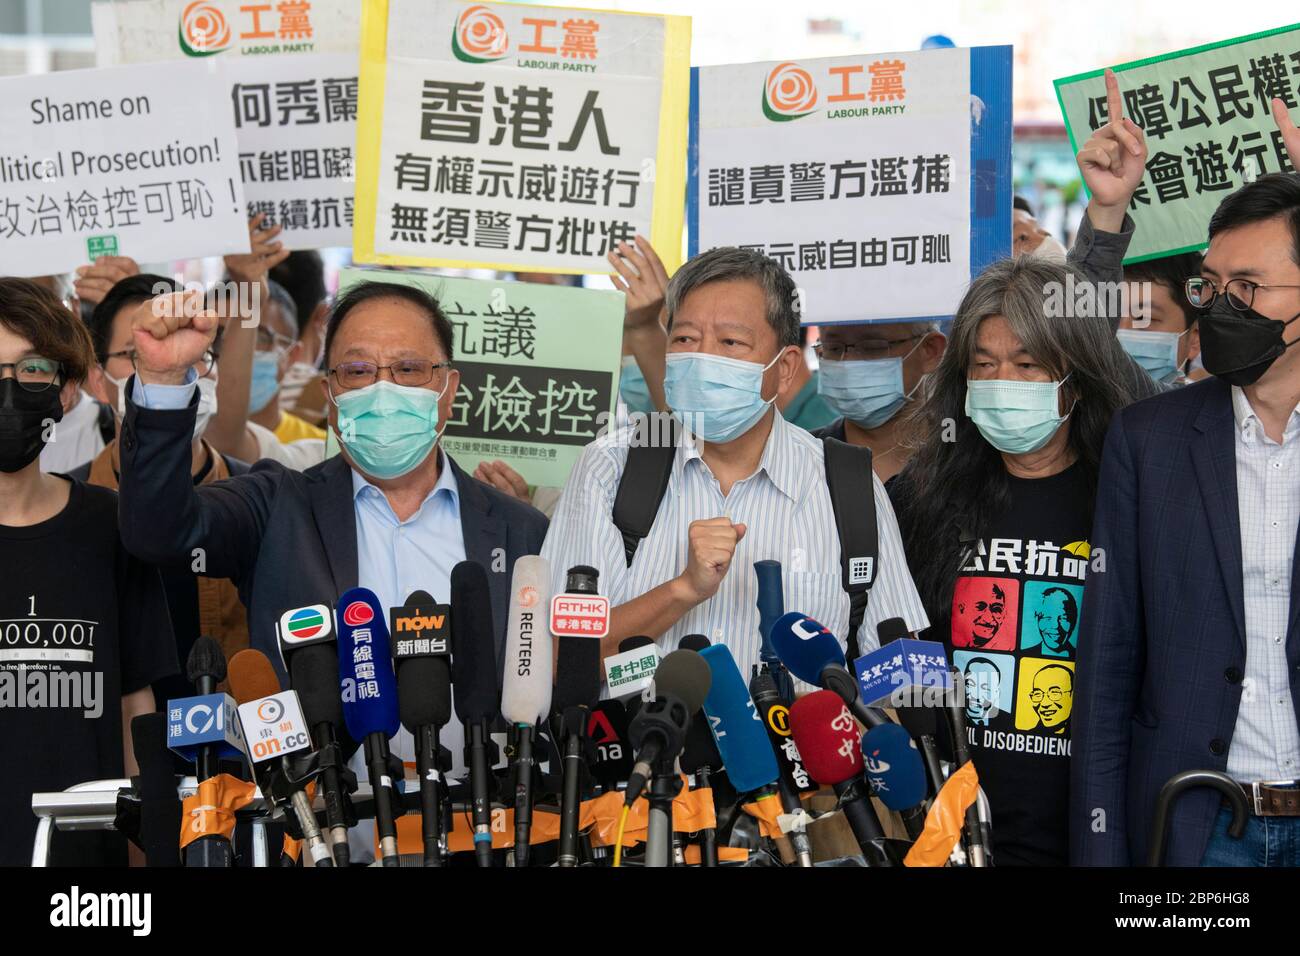 HONGKONG, HONGKONG SAR, CHINA: 18. MAI 2020. Die Democracy 15 erscheinen nach ihren jüngsten Verhaftungen vor dem Amtsgericht West Kowloon. Die Gruppe umfasst einige der bedeutendsten Akteure im Kampf für die Demokratie in Hongkong. Die Gruppe trifft die Medien die Gruppe umfasst Cyd Ho Sau-lan, Martin Lee, Yeung Sum (L), Sin Chung-kai, Albert Ho Chun-yan, Au NOK-hin, Richard Tsoi, Margaret Ng, Jimmy Lai, Lee Cheuk-Yan (M), Leung Yiu-Chung, Leung Kwok-Hung (R), Figo Chan, Avery Nayne, Alamy, Russell News Stockfoto